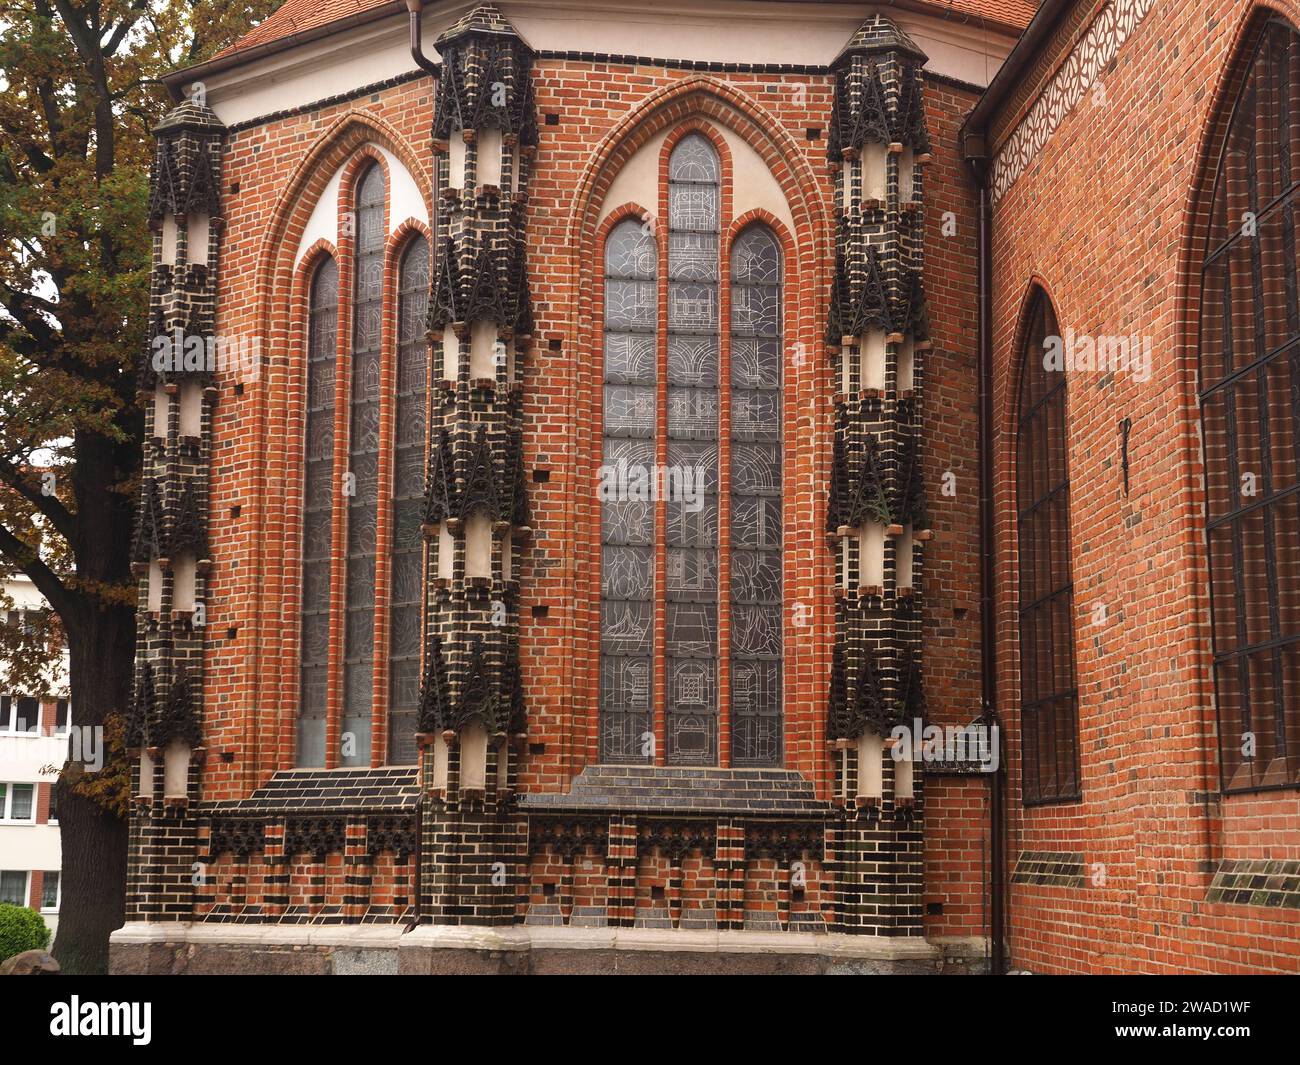 Il murs extérieurs, fenêtres et ornements architecturaux (arcade) de St. Église de Marie, Stargard Szczecin Pologne Banque D'Images